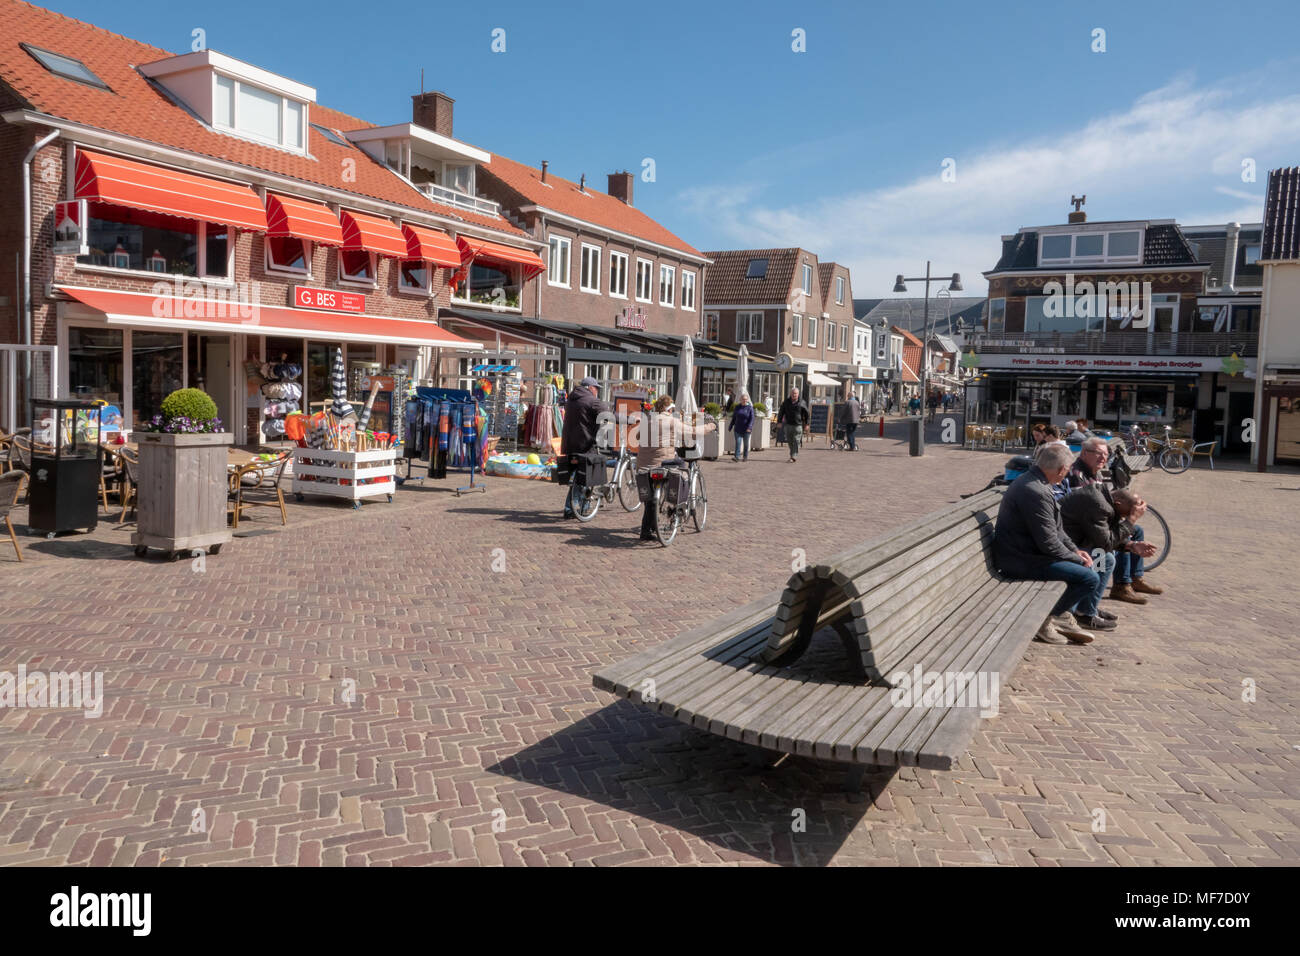 Egmond aan Zee , Noord Holland / Paesi Bassi - 24 Aprile 2018 : una popolare località balneare sulla costa nord ovest dell'Olanda. I turisti gustando un drink presso il locale cafè e ristoranti. Foto Stock